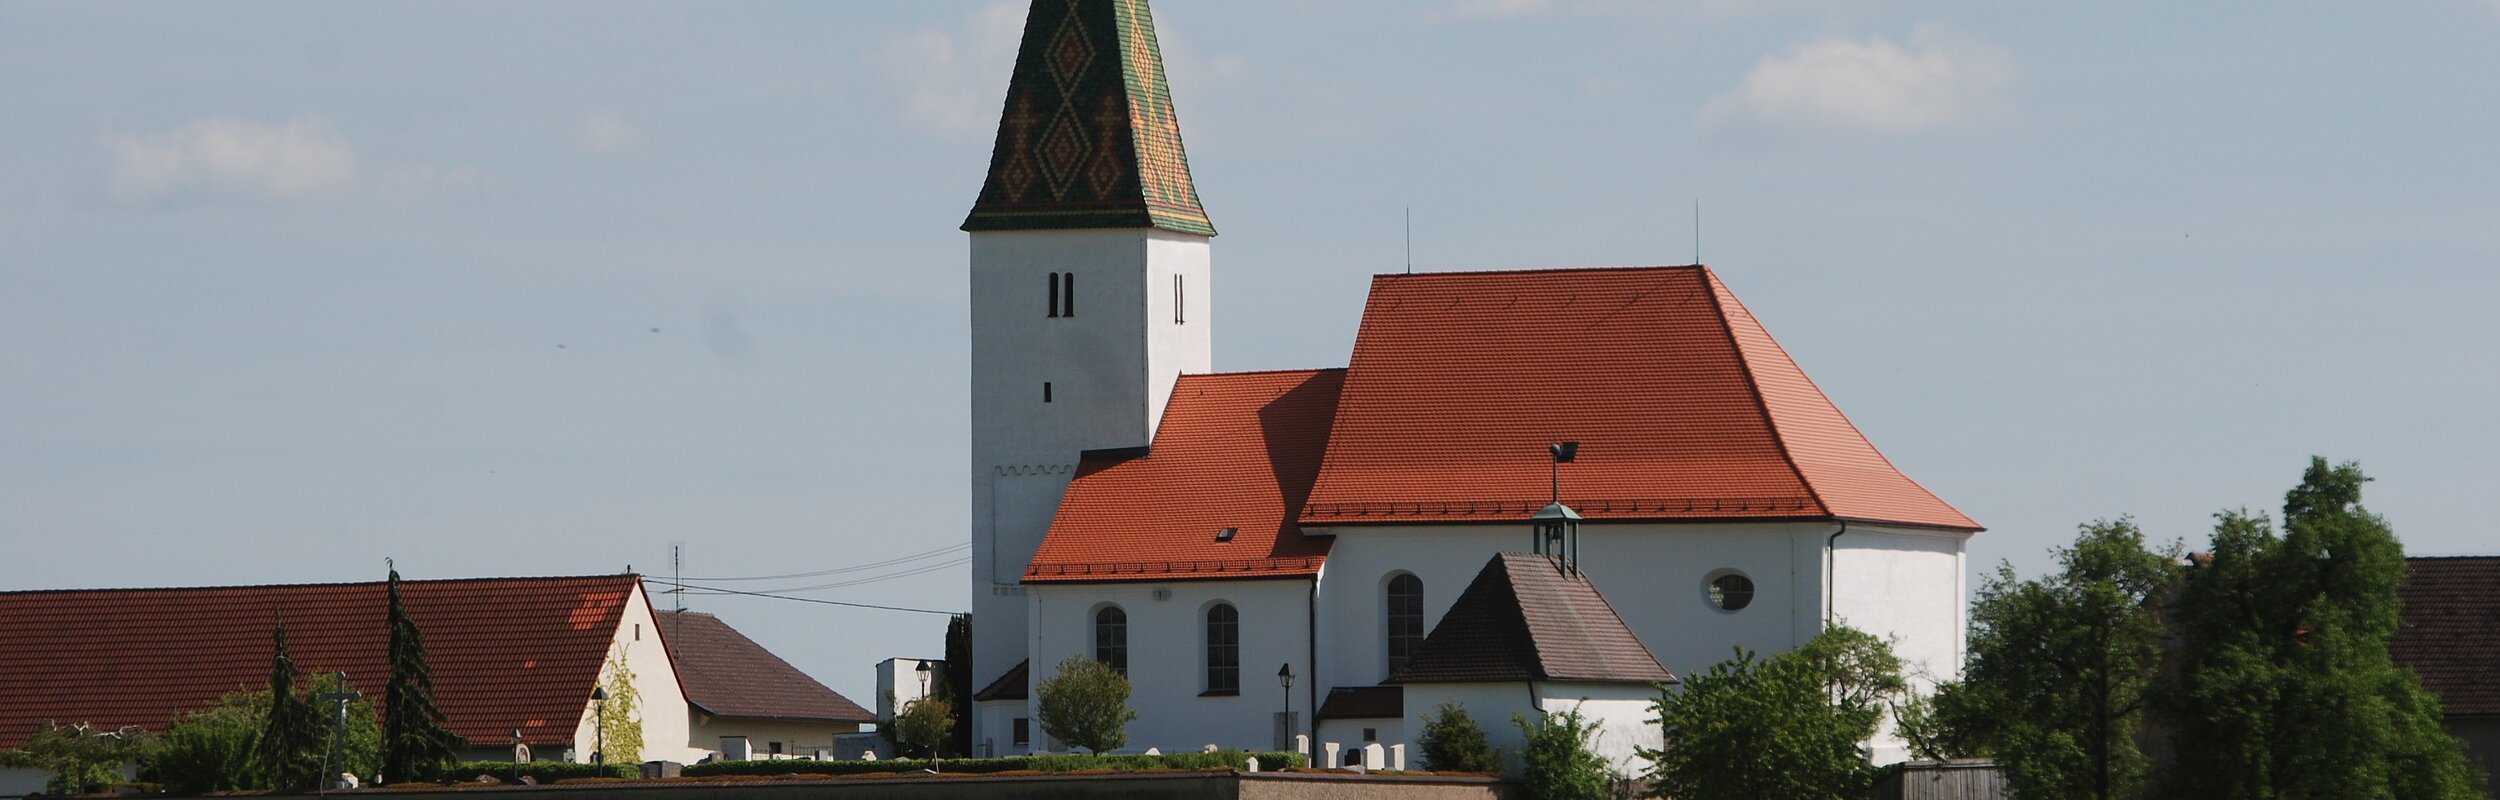 Kath. Pfarrkirche St. Peter und Paul in Rögling